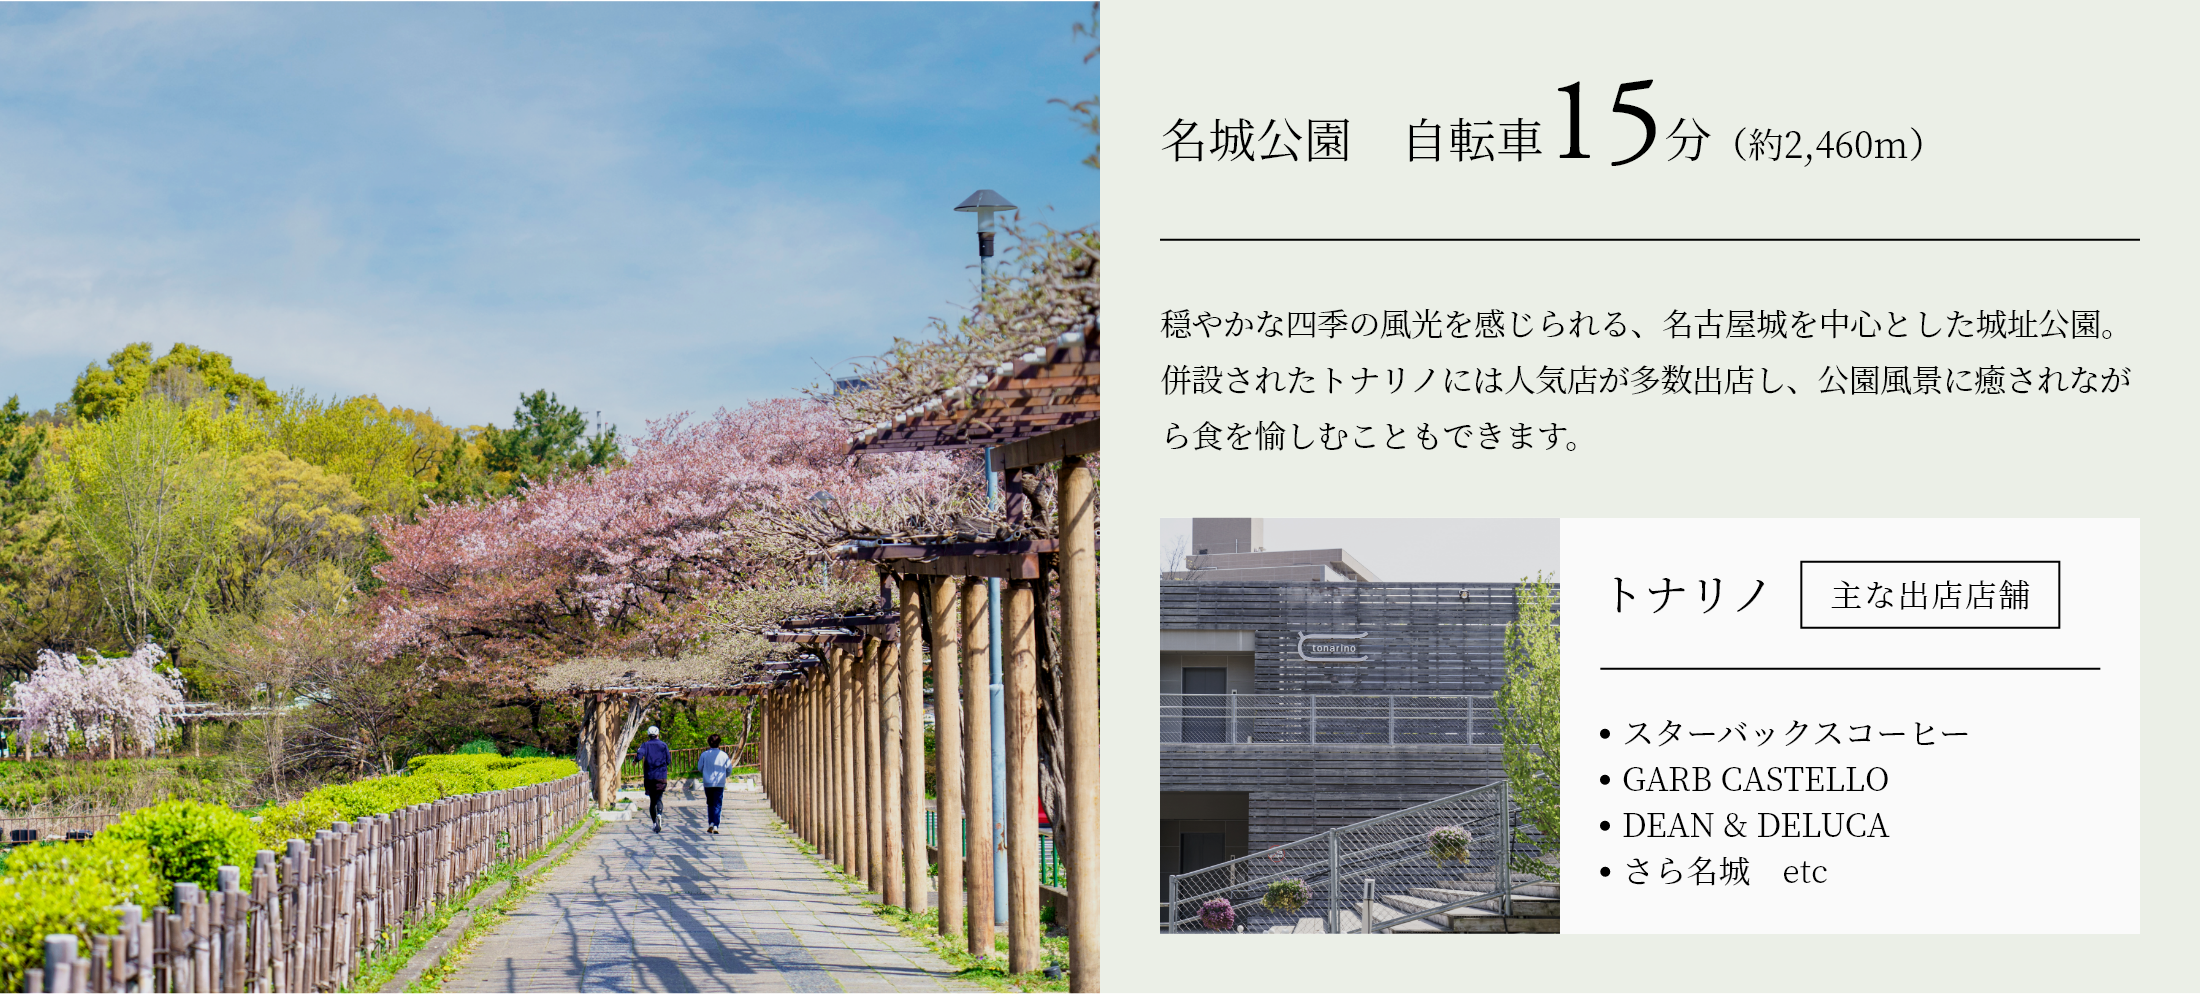 名城公園　自転車15分（約2,460m） 穏やかな四季の風光を感じられる、名古屋城を中心とした城址公園。併設されたトナリノには人気店が多数出店し、公園風景に癒されながら食を愉しむこともできます。